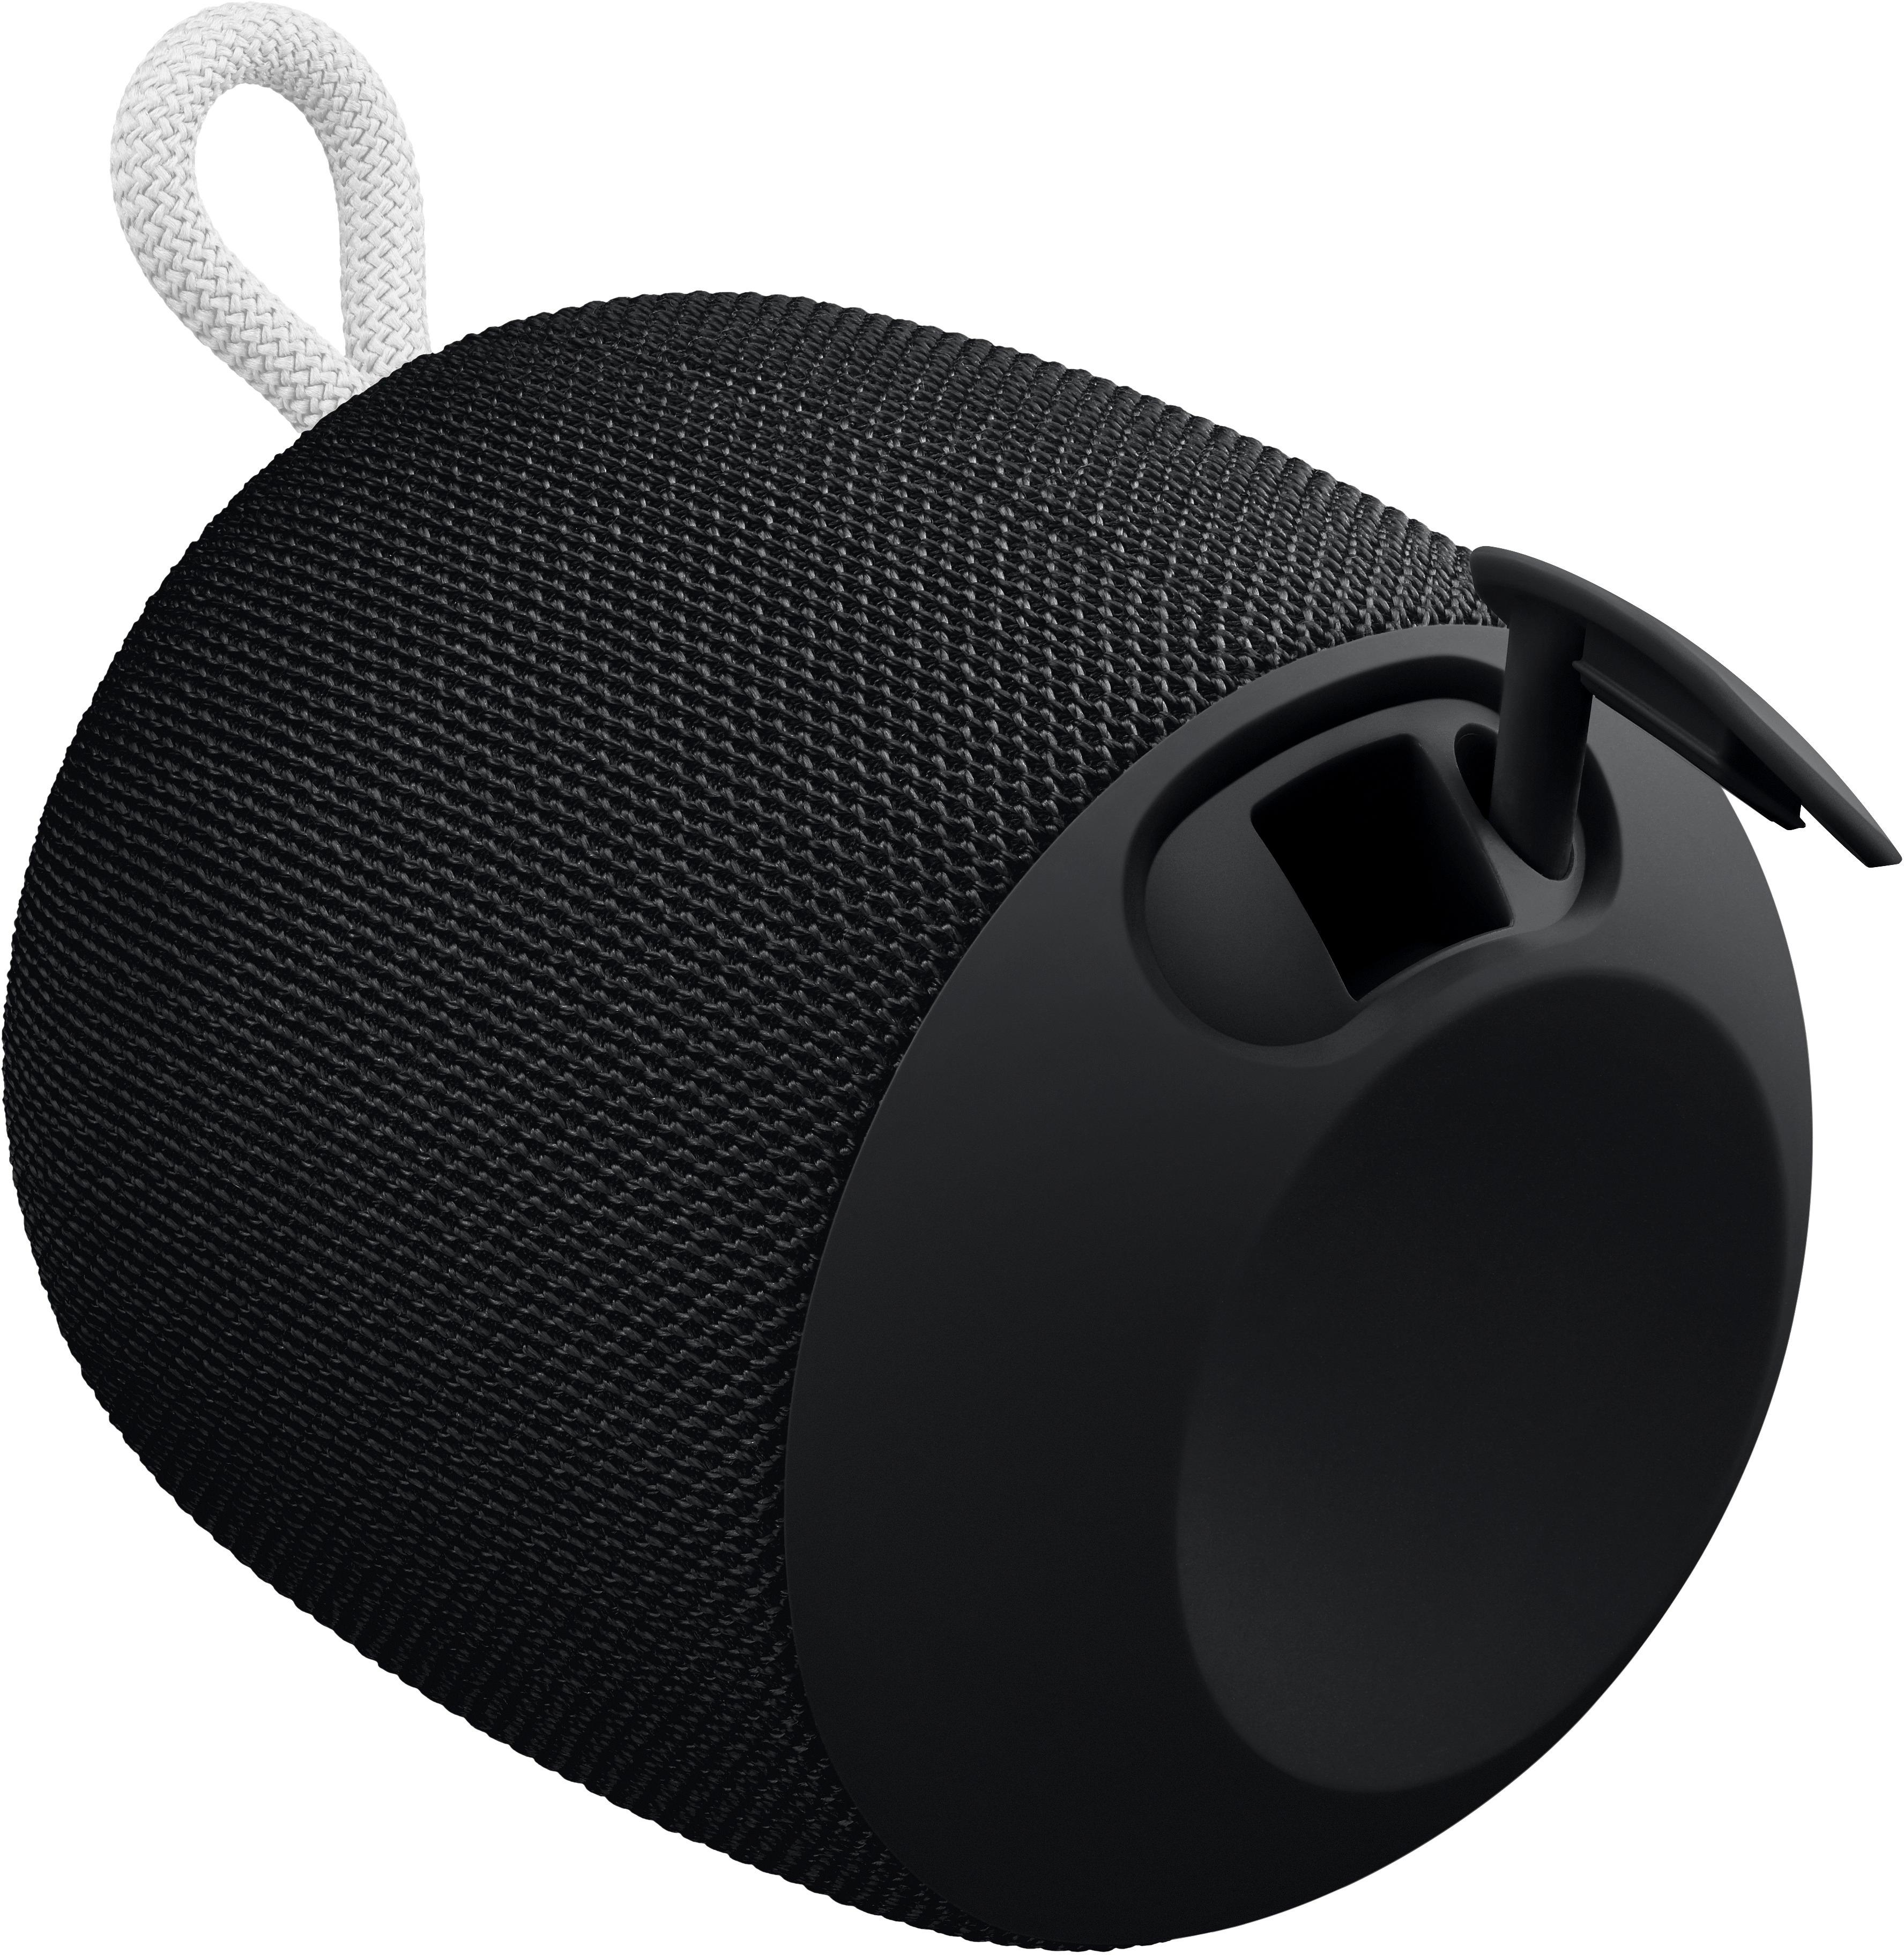 Portable Phantom Buy: Bluetooth black 984-000839 WONDERBOOM Ears Best Ultimate Speaker